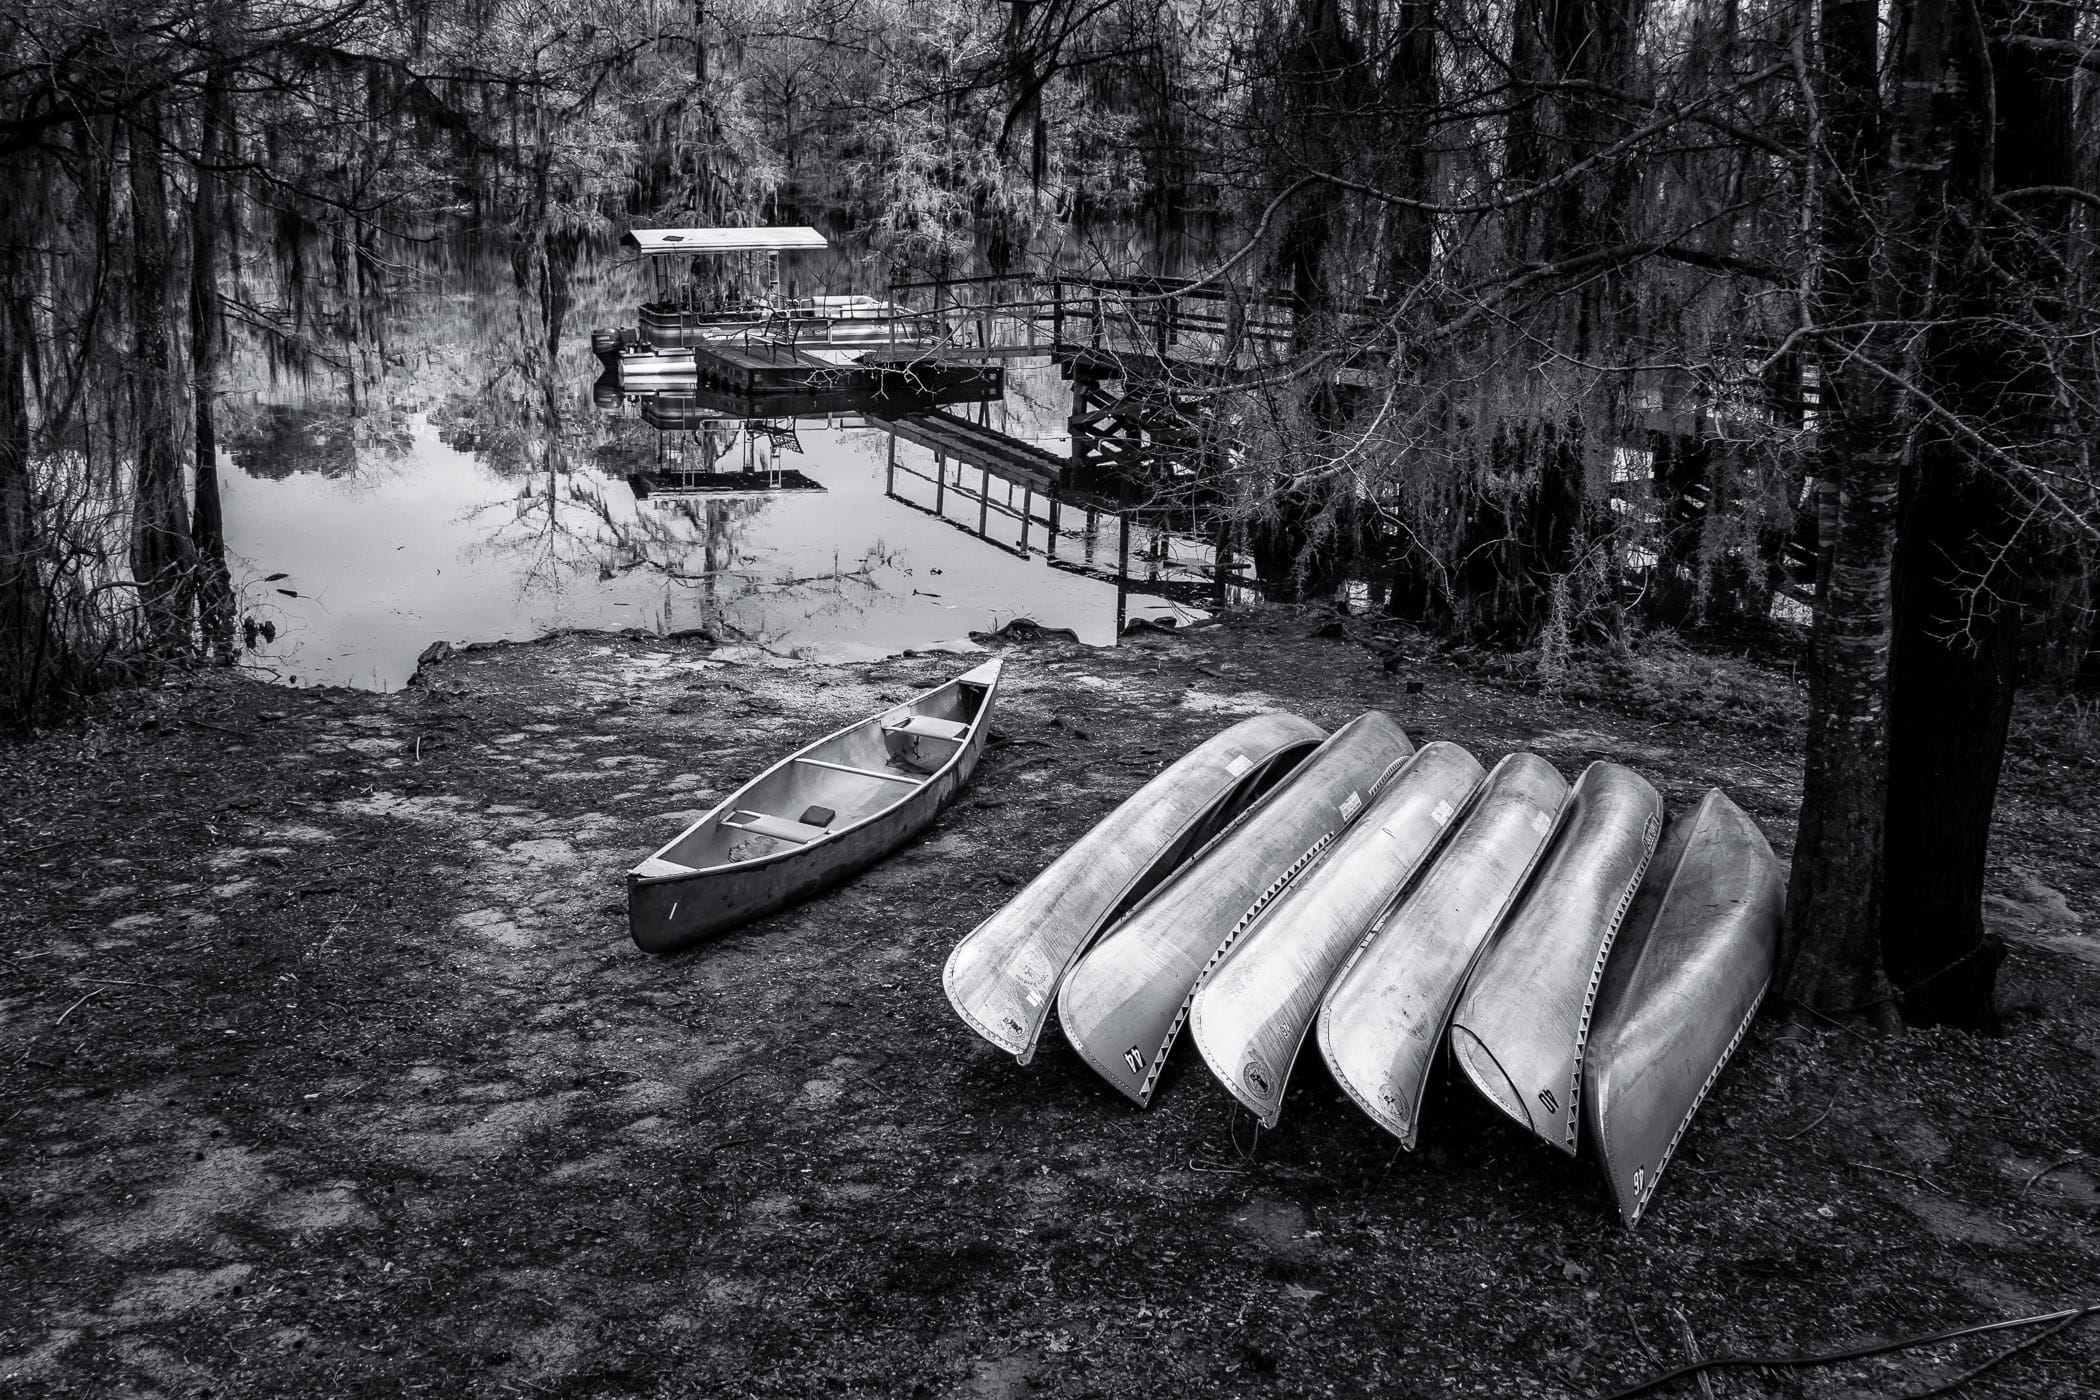 Canoes ashore at Caddo Lake State Park, Texas.